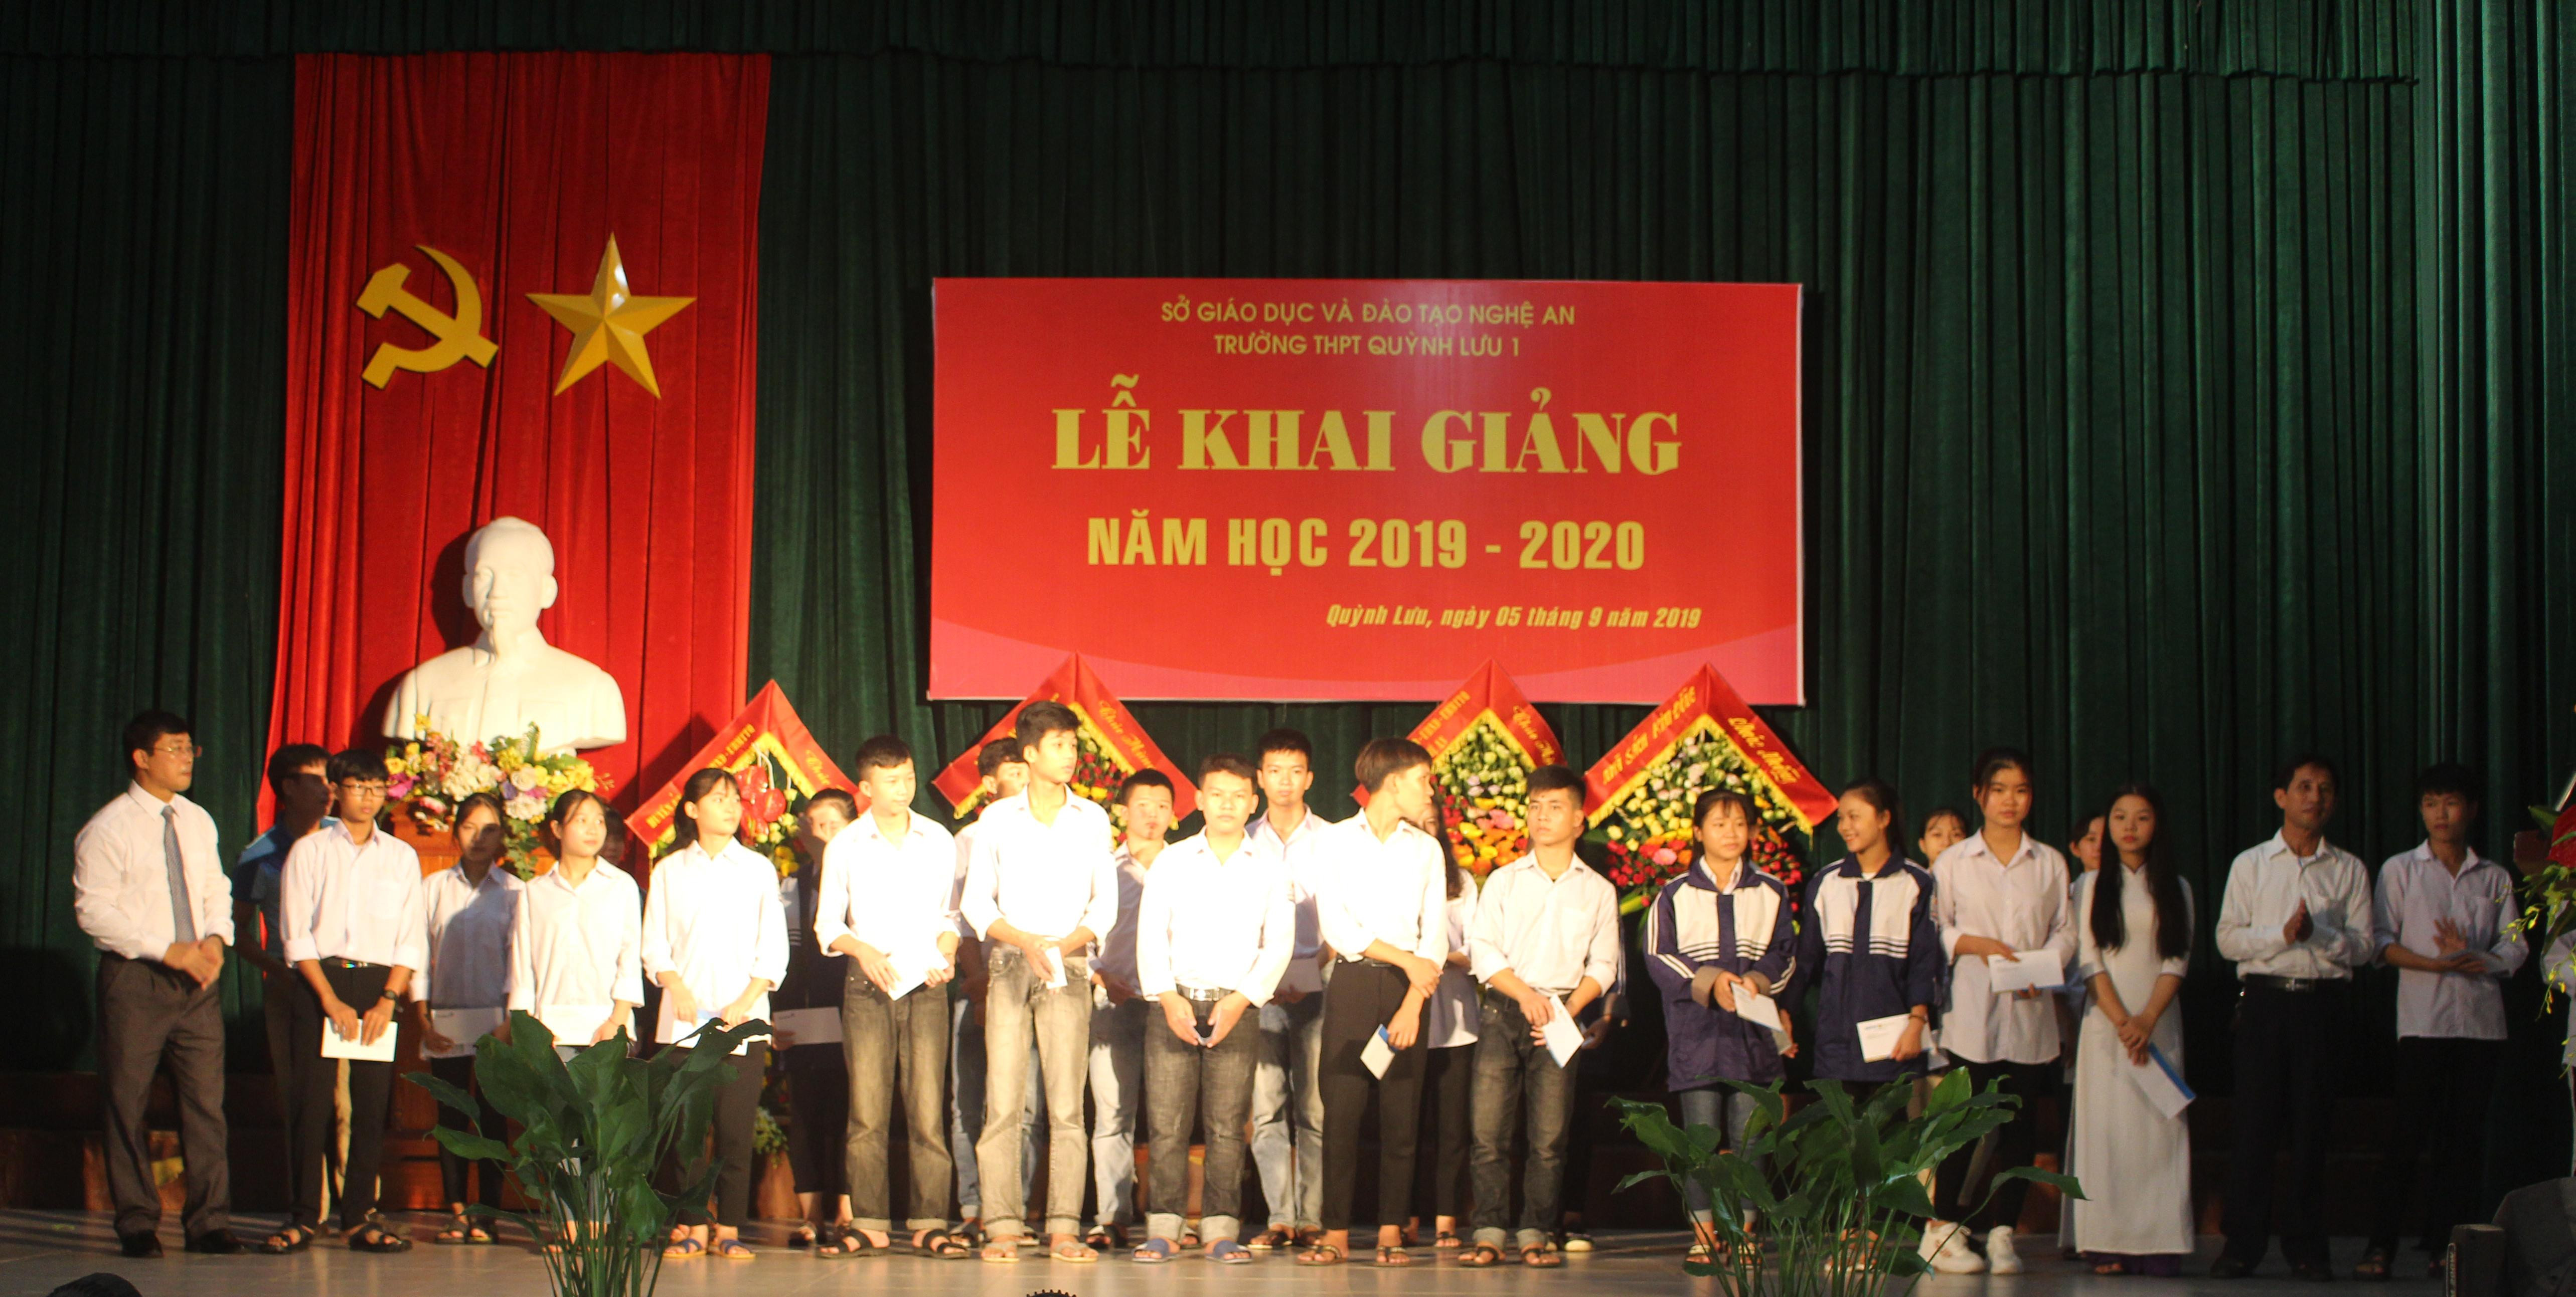 Nhân dịp khai giảng năm học mới, các trường học trên địa bàn huyện Quỳnh Lưu đều phát động tháng khuyến học và tổ chức trao quà khuyến học với tổng số tiền hàng trăm triệu đồng.